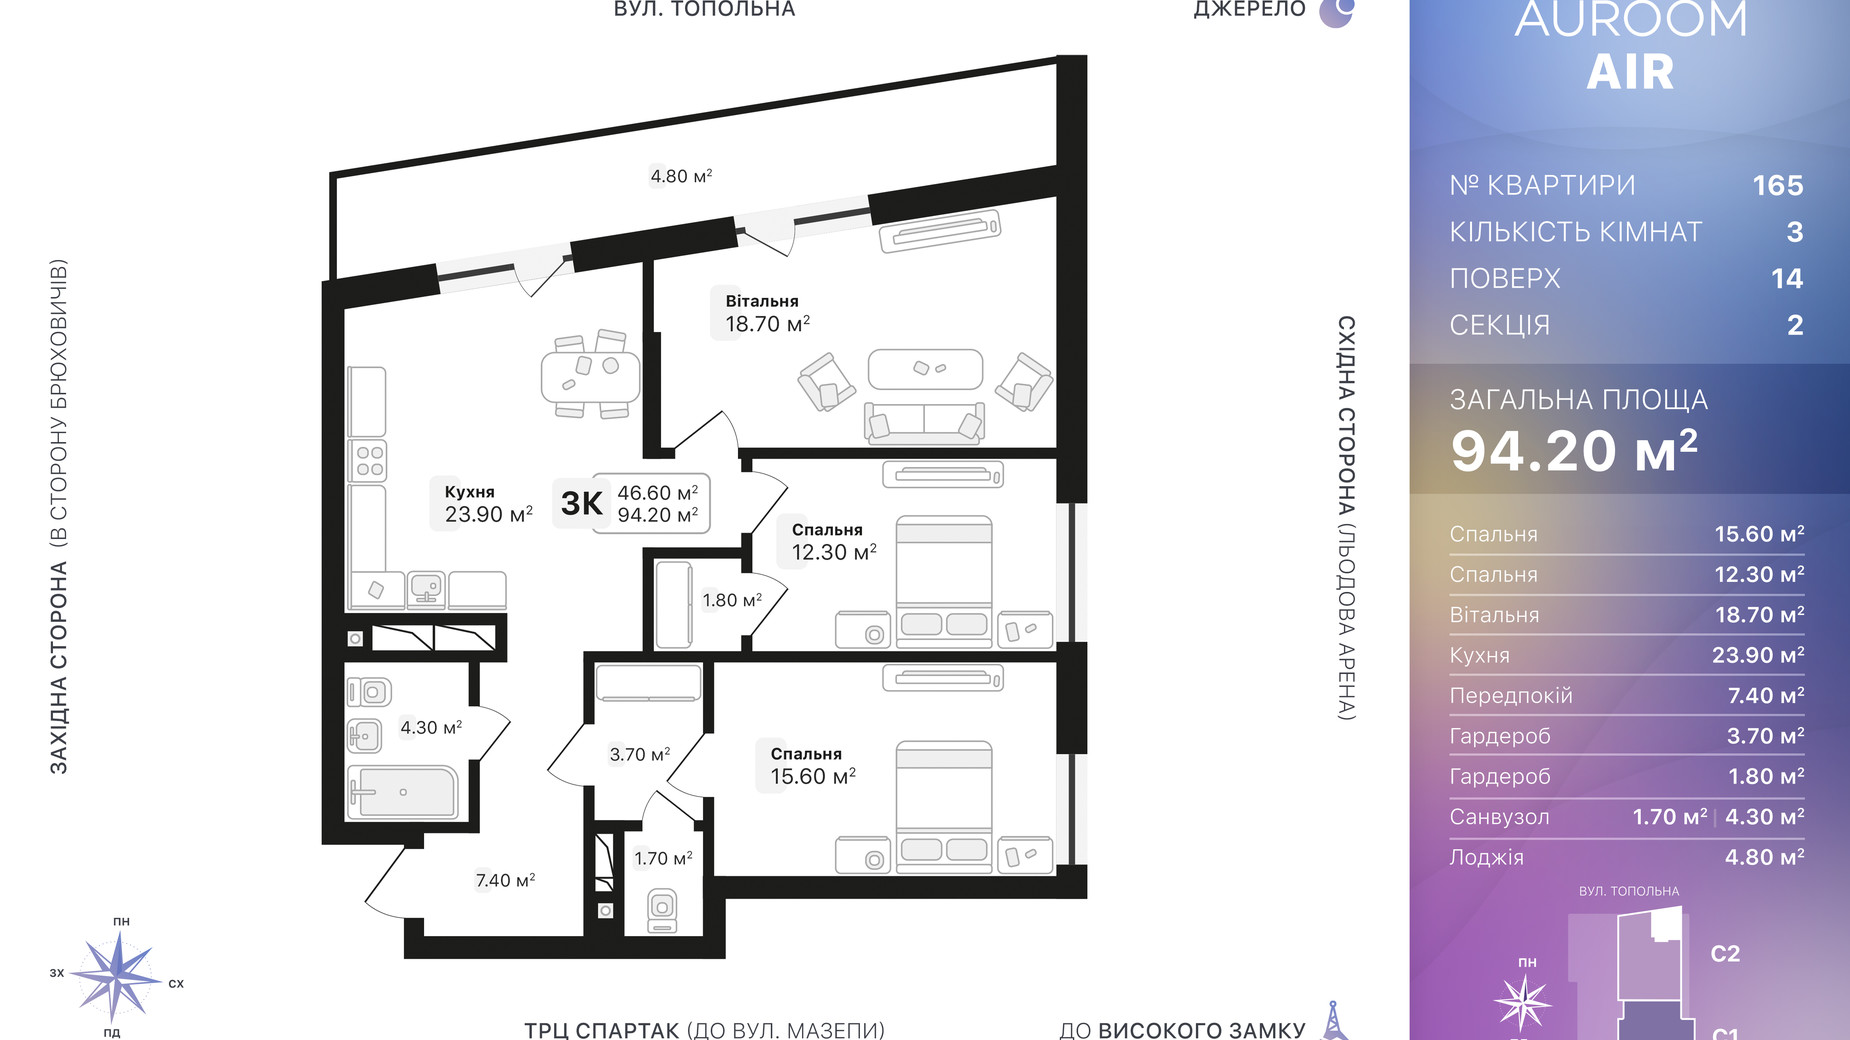 Планировка 3-комнатной квартиры в ЖК Auroom Air 94.2 м², фото 552432